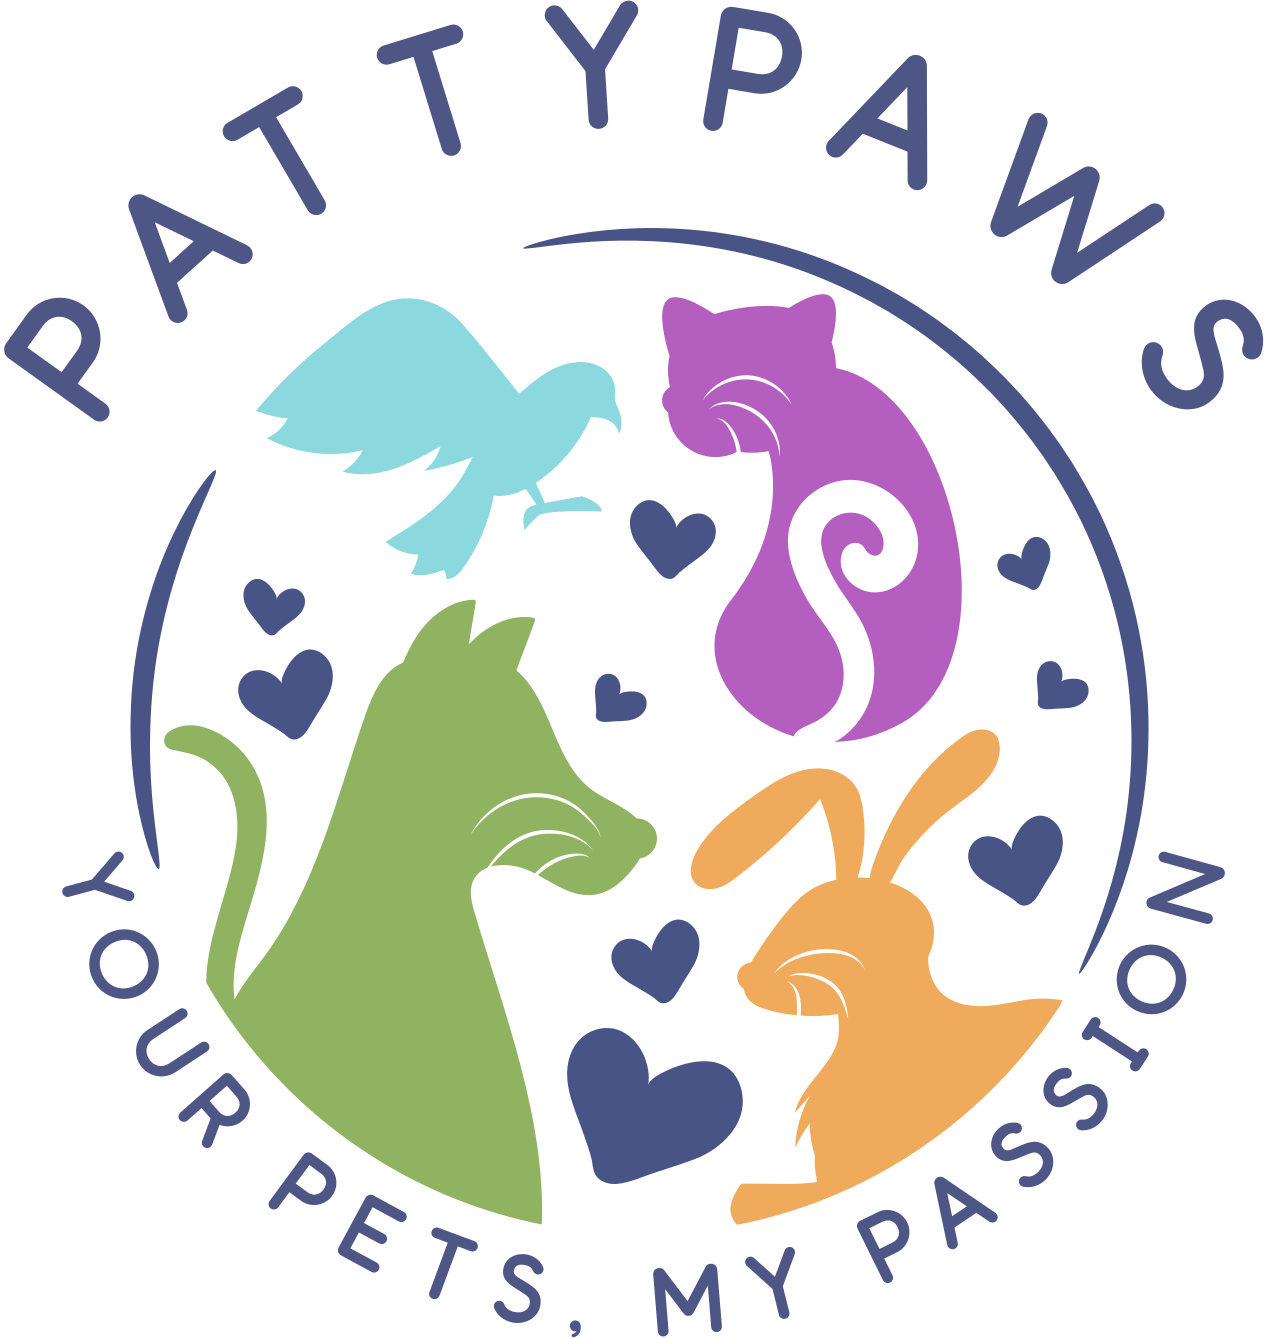 PATTYPAWS's logo